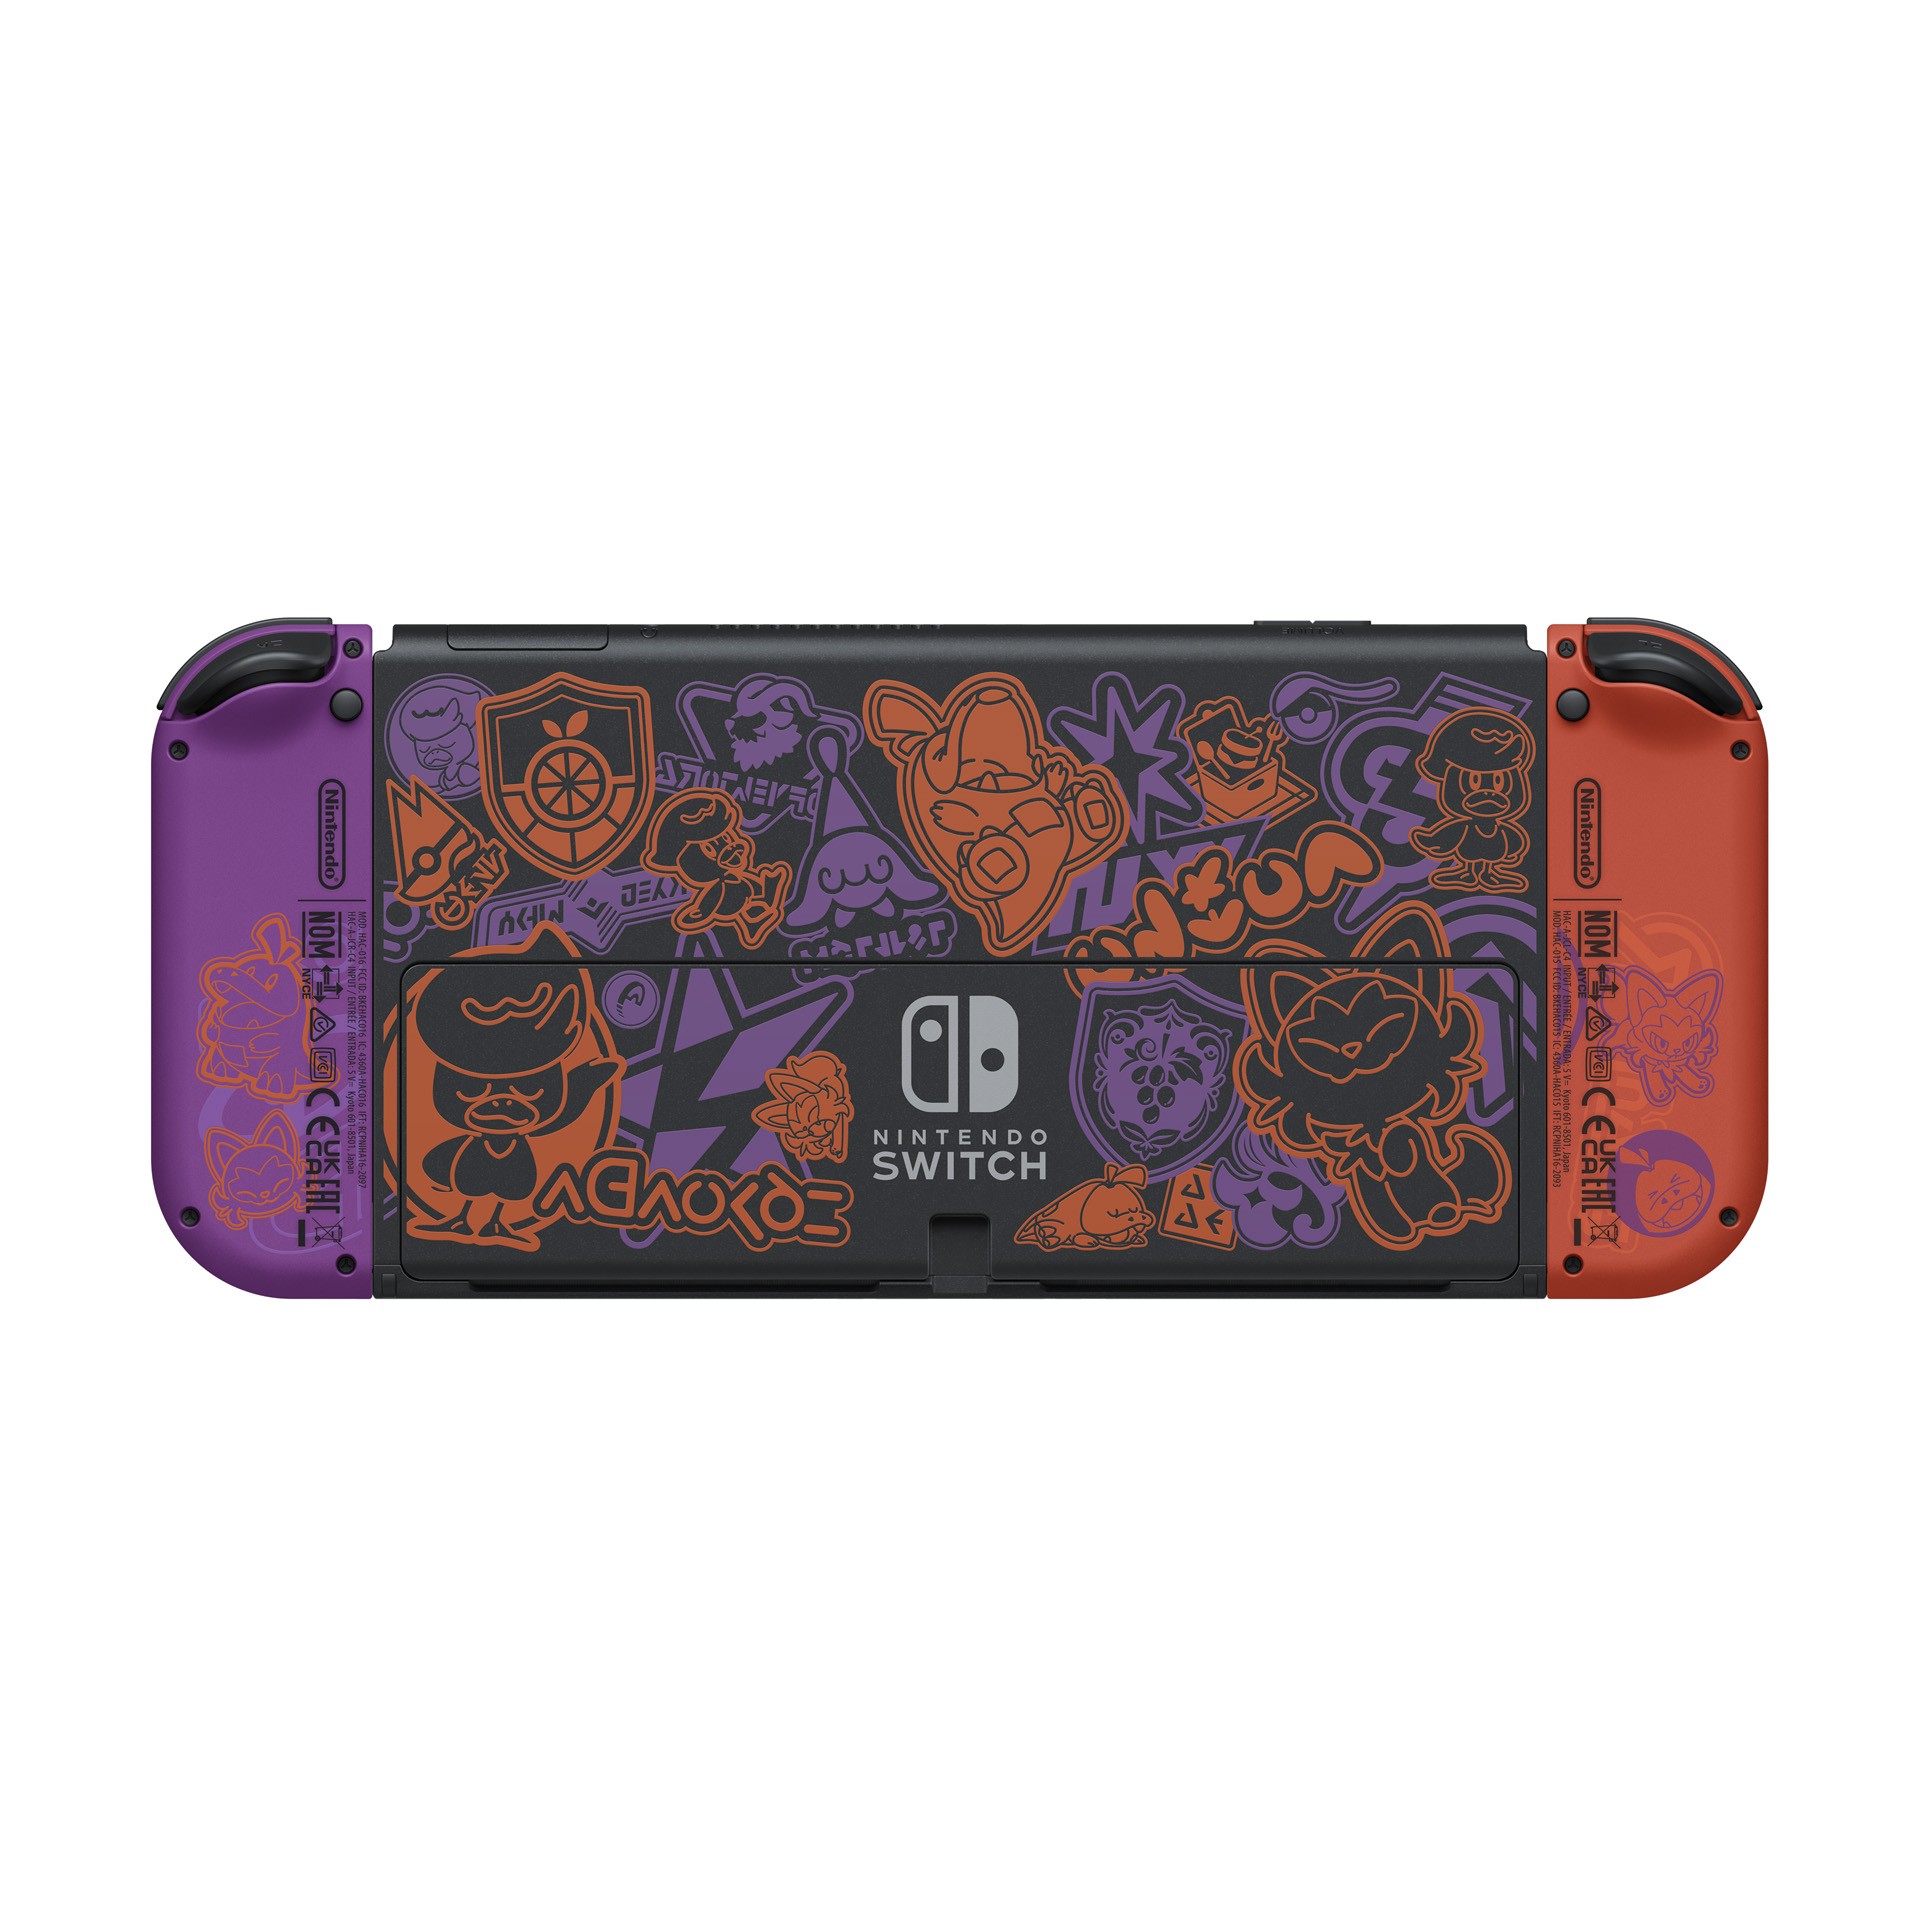 Nintendo Switch OLED konsole - Pokémon Scarlet & Violet Edition